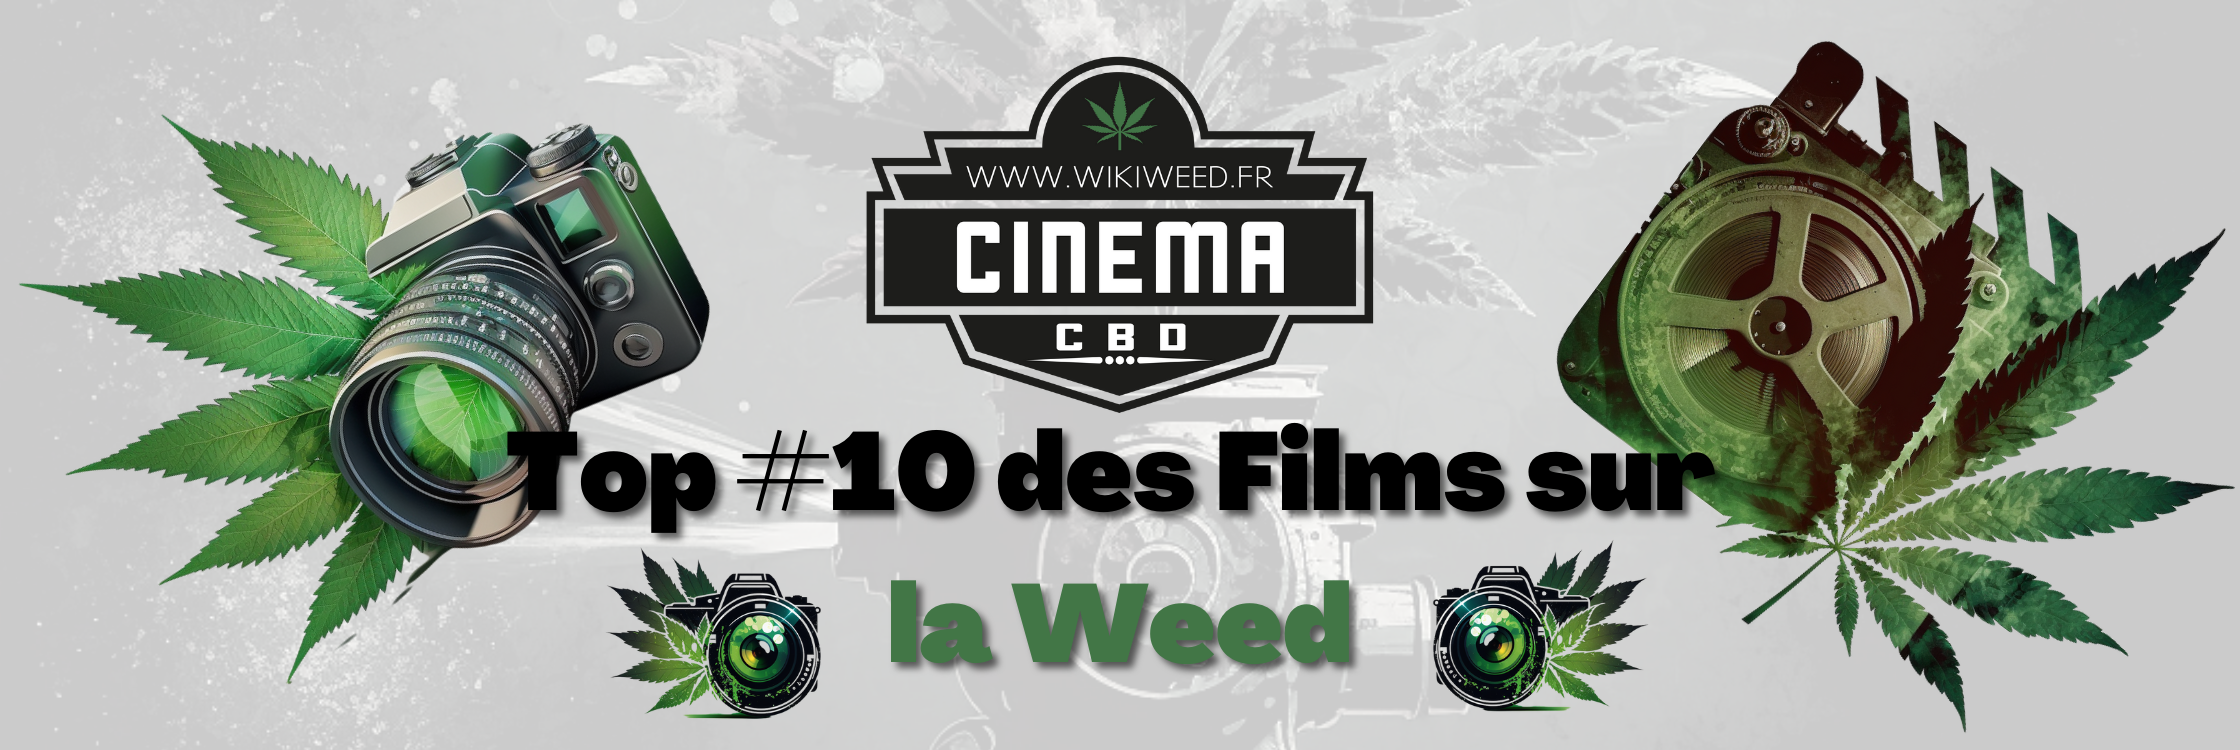 Films sur la Weed : Le #TOP10